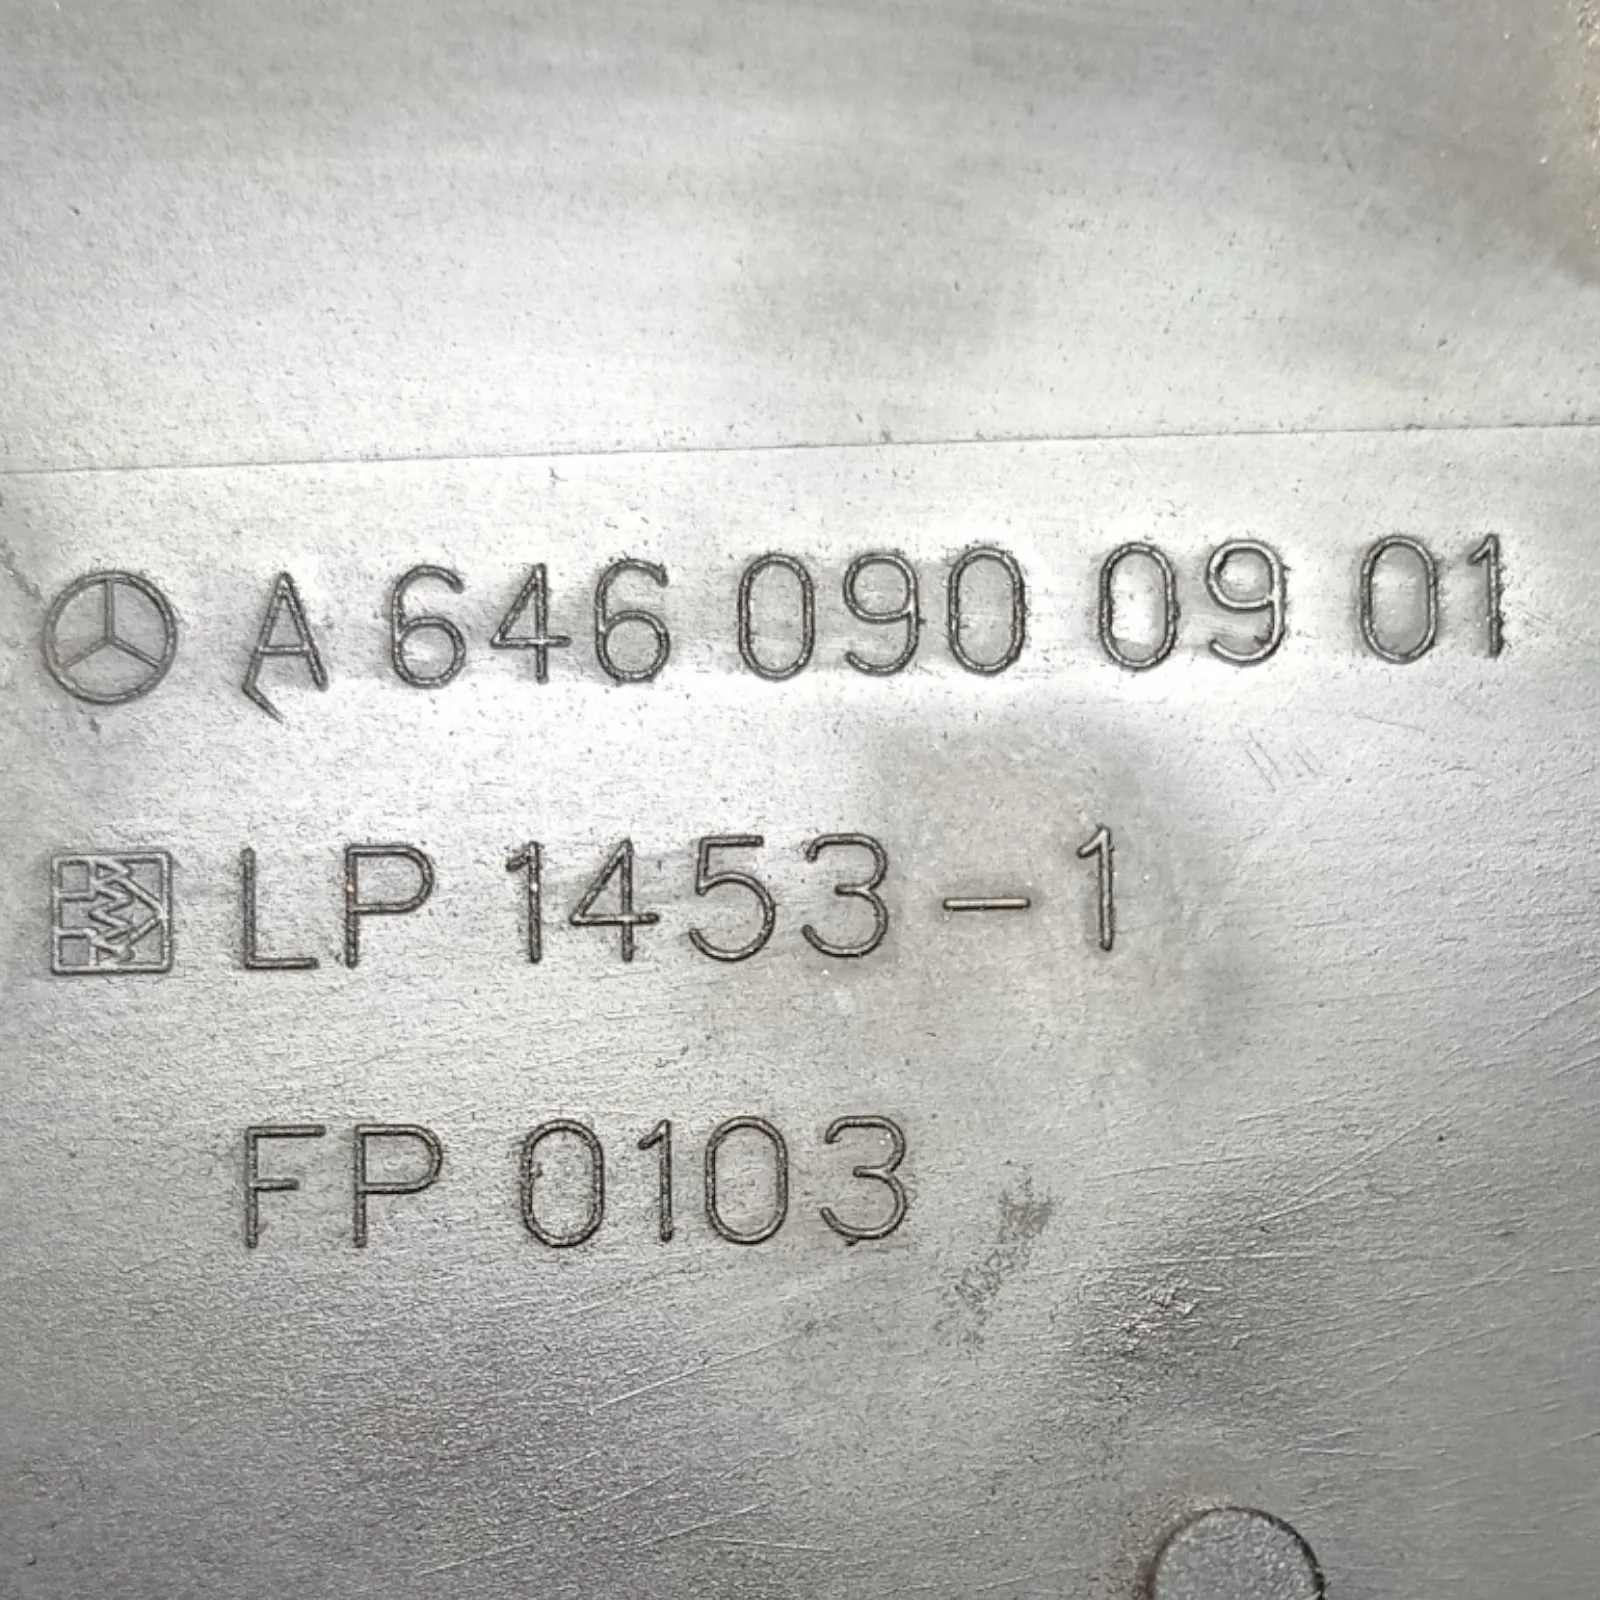 Кутия въздушен филтър Mercedes C-class W203 (2004-2007)-[A 646 090 09 01] 3